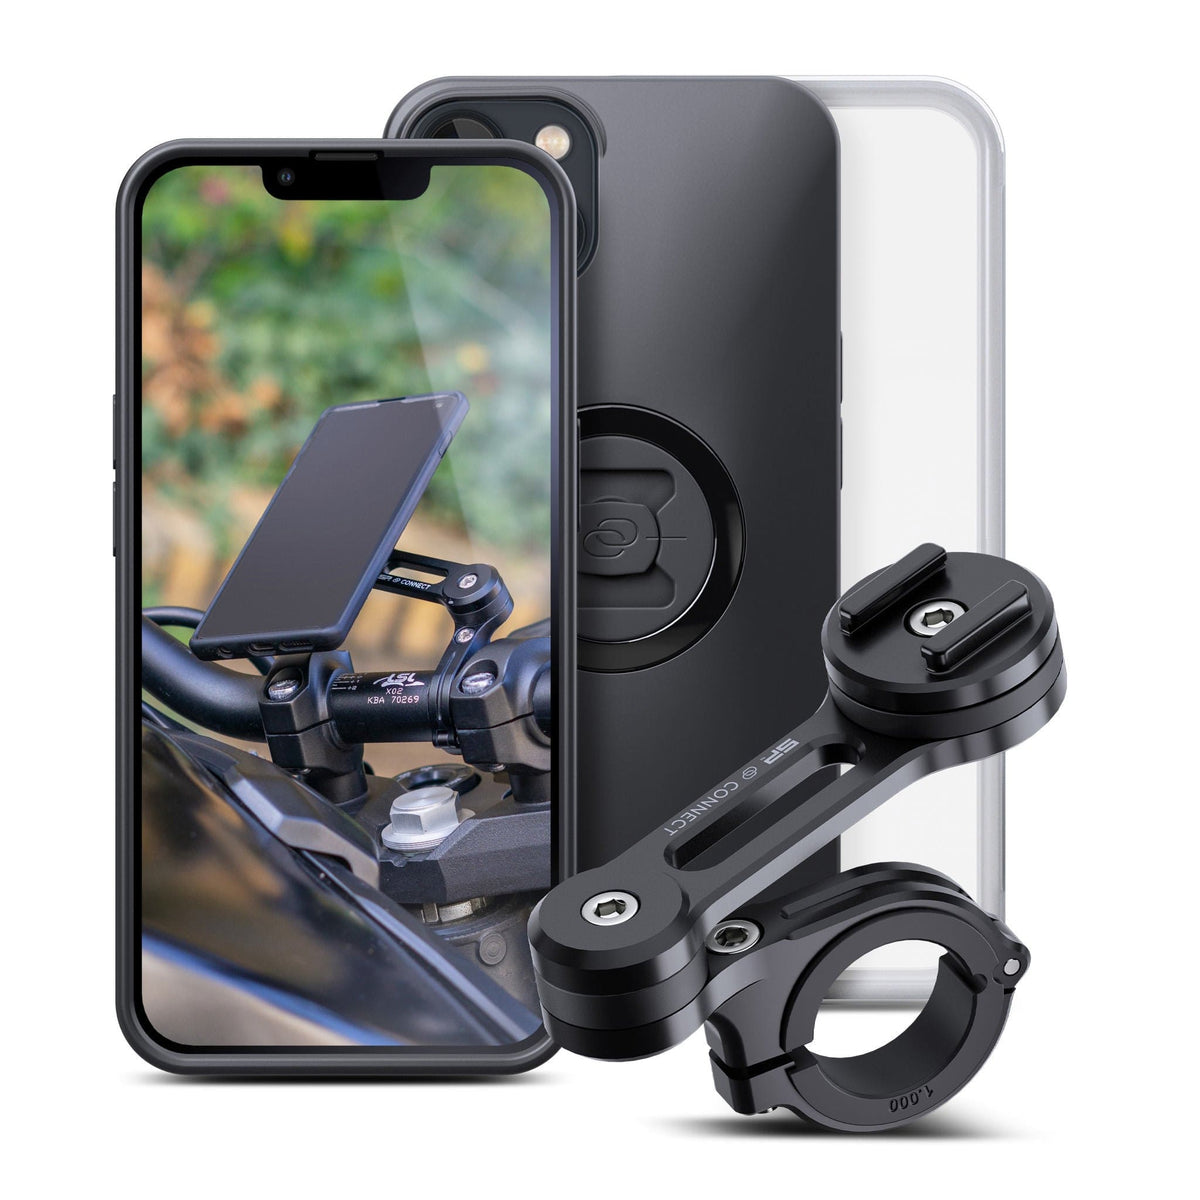 SP CONNECT Handyhalterung Motorrad, Universeller Handyhalter für Motorrad  Bike Moped Roller, Zubehör für alle Smartphone Handys wie iPhone Samsung